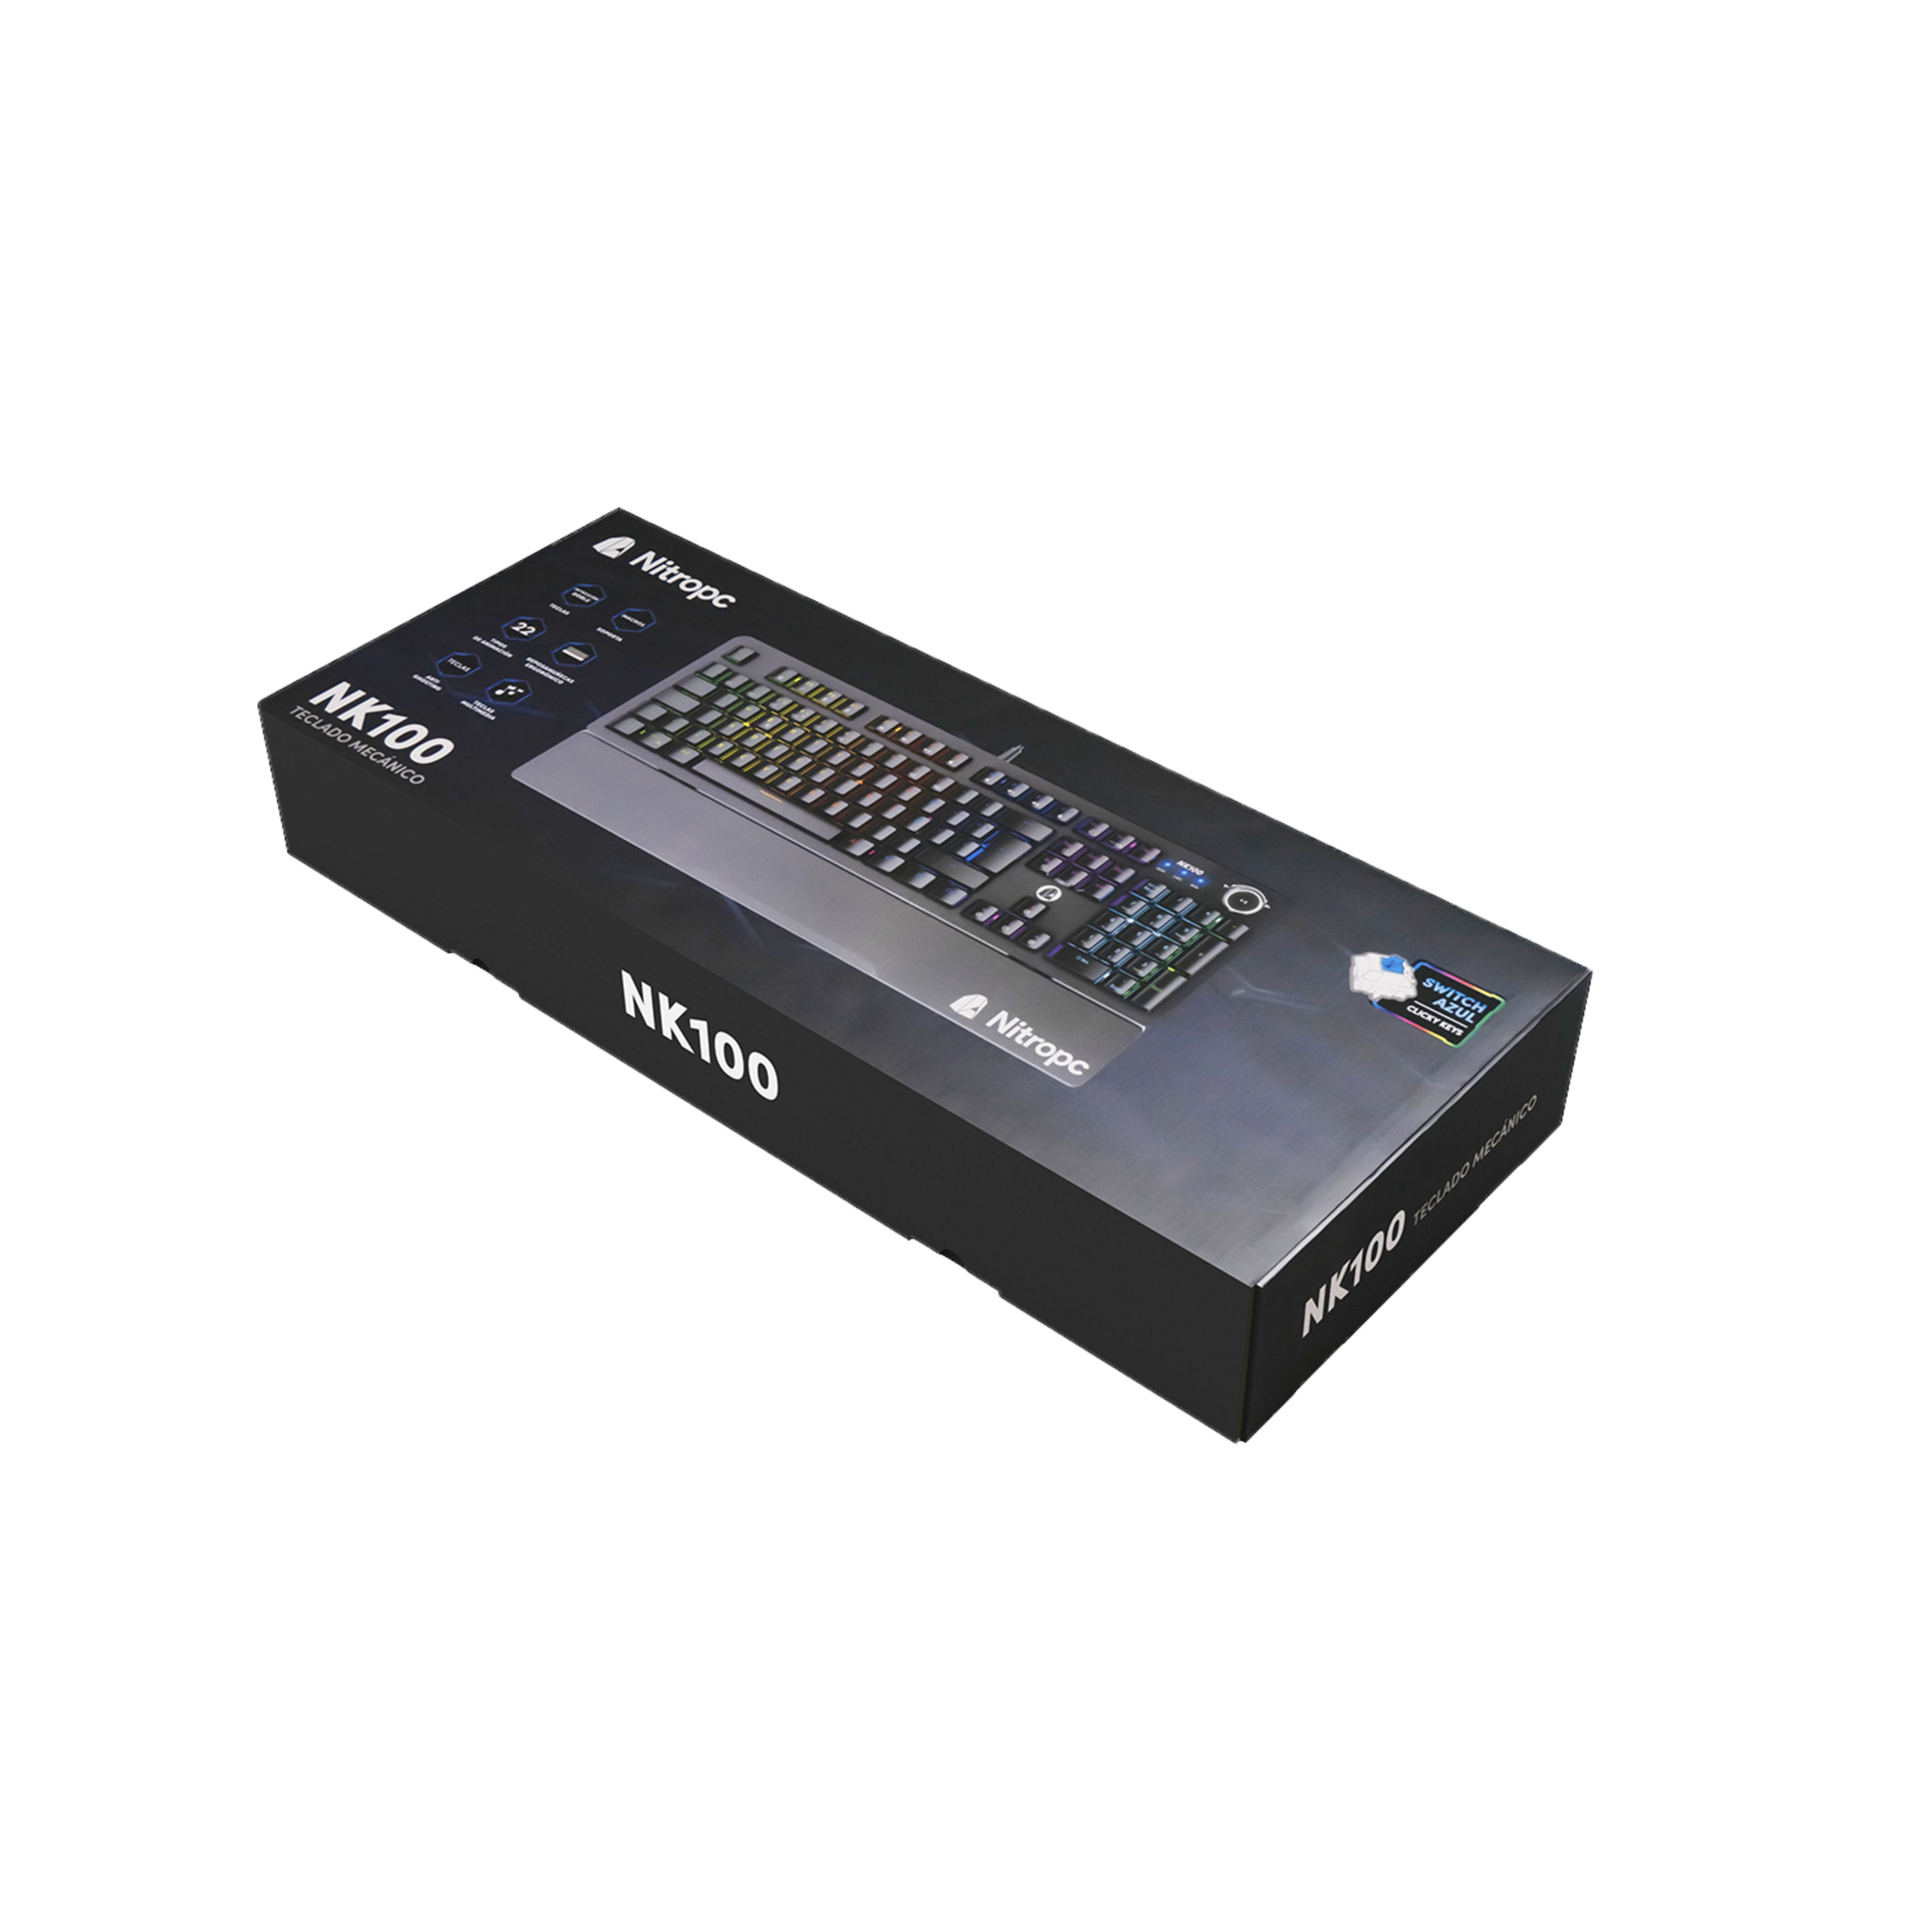 Teclado Gaming Nitropc Nk100 Mecánico Con Switches Blue E Iluminación Rgb Totalmente Configurable - Negro MKP